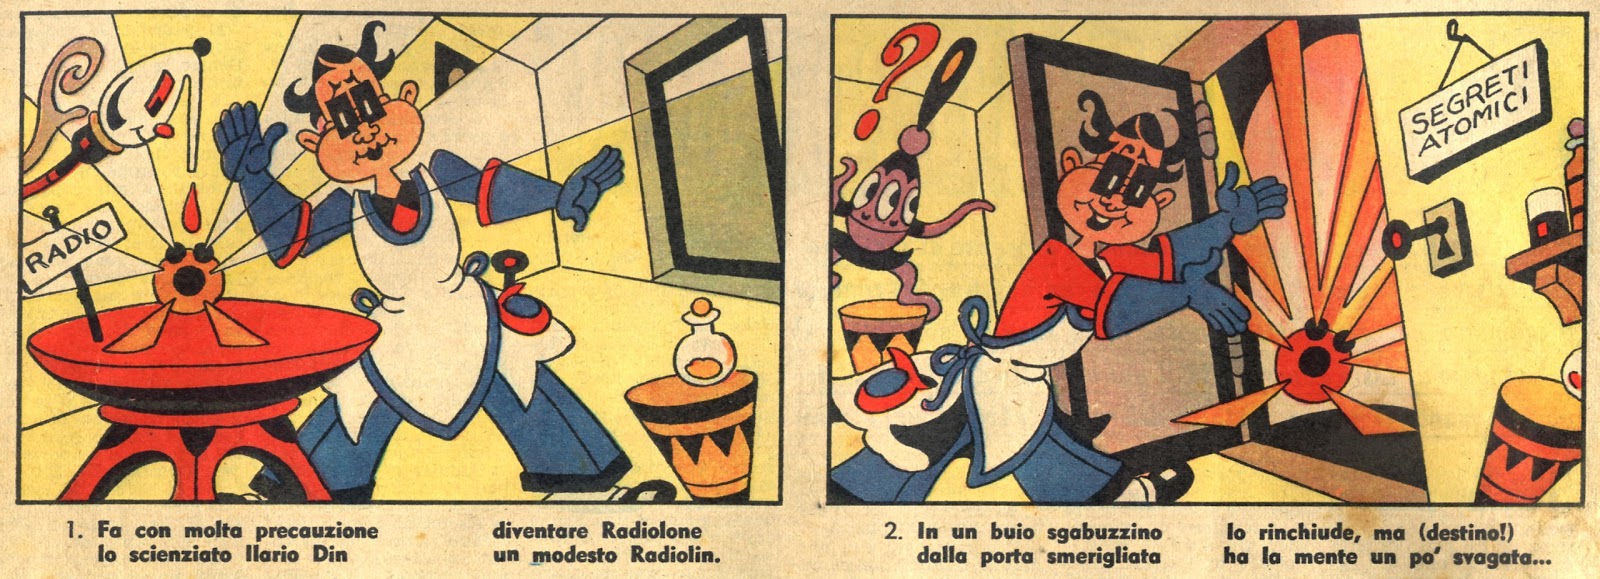  Corriere dei Piccoli - 1956 - 01 - Rubino 1a